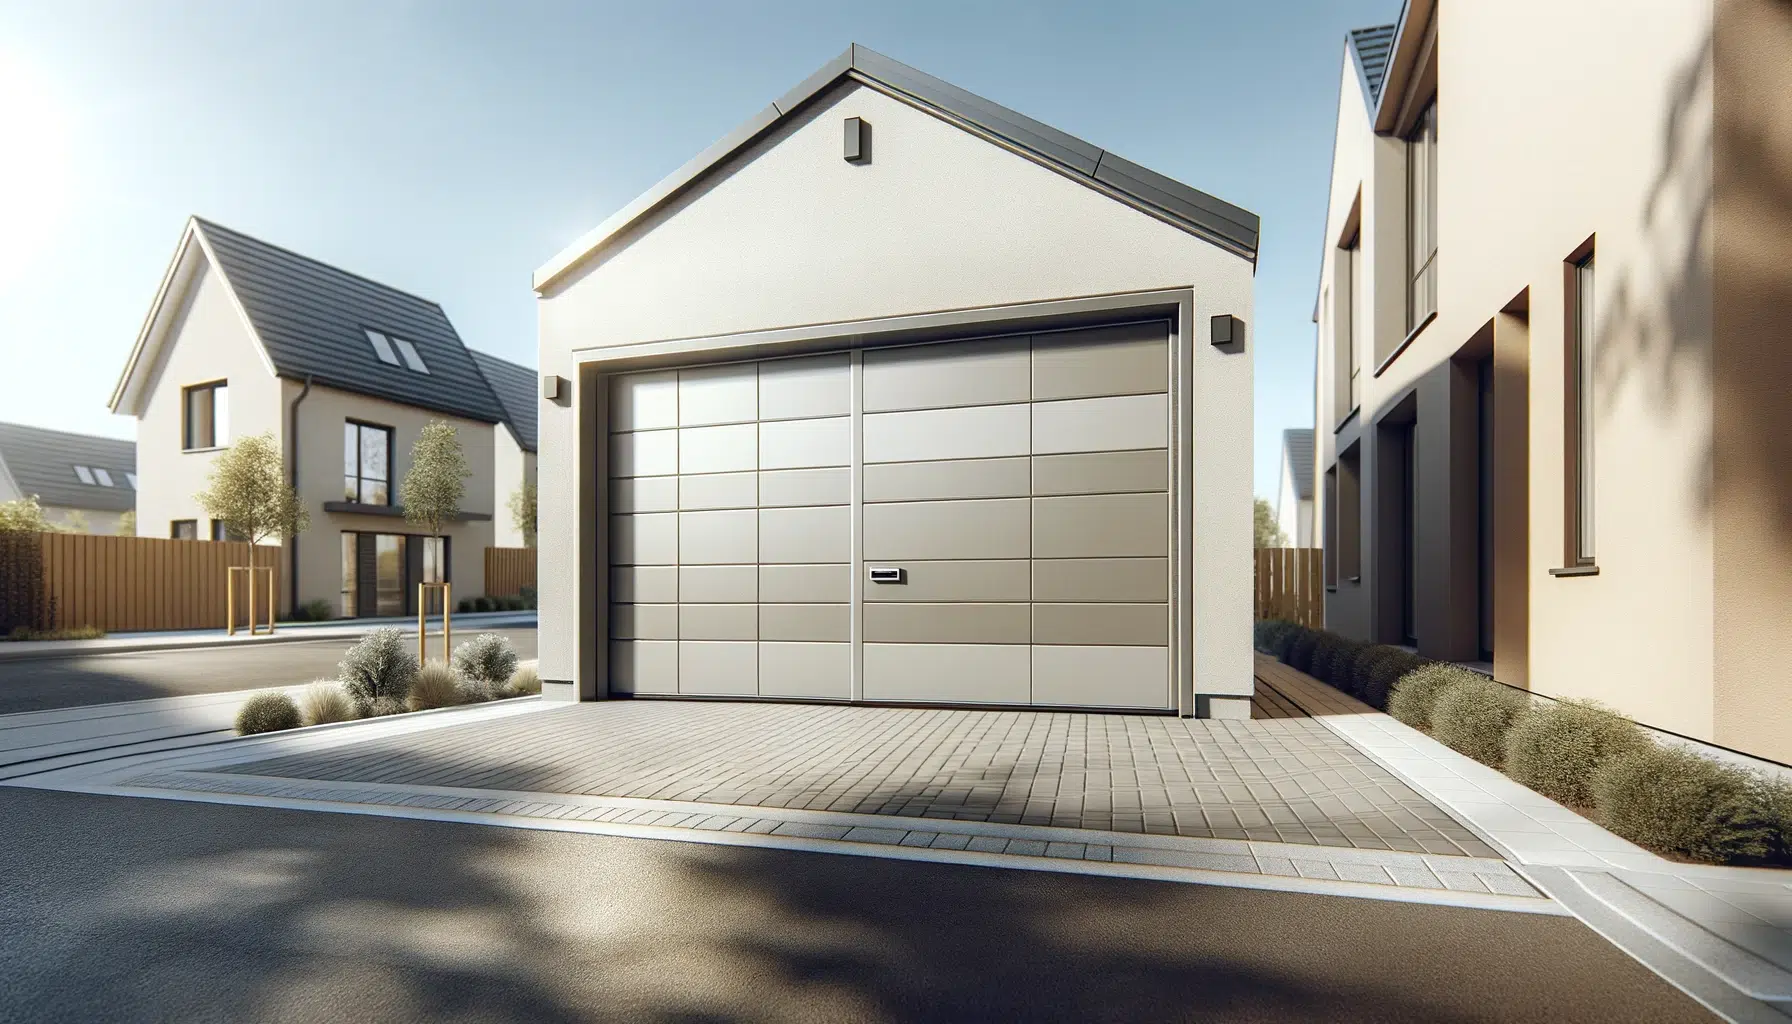 A modern residential garage door